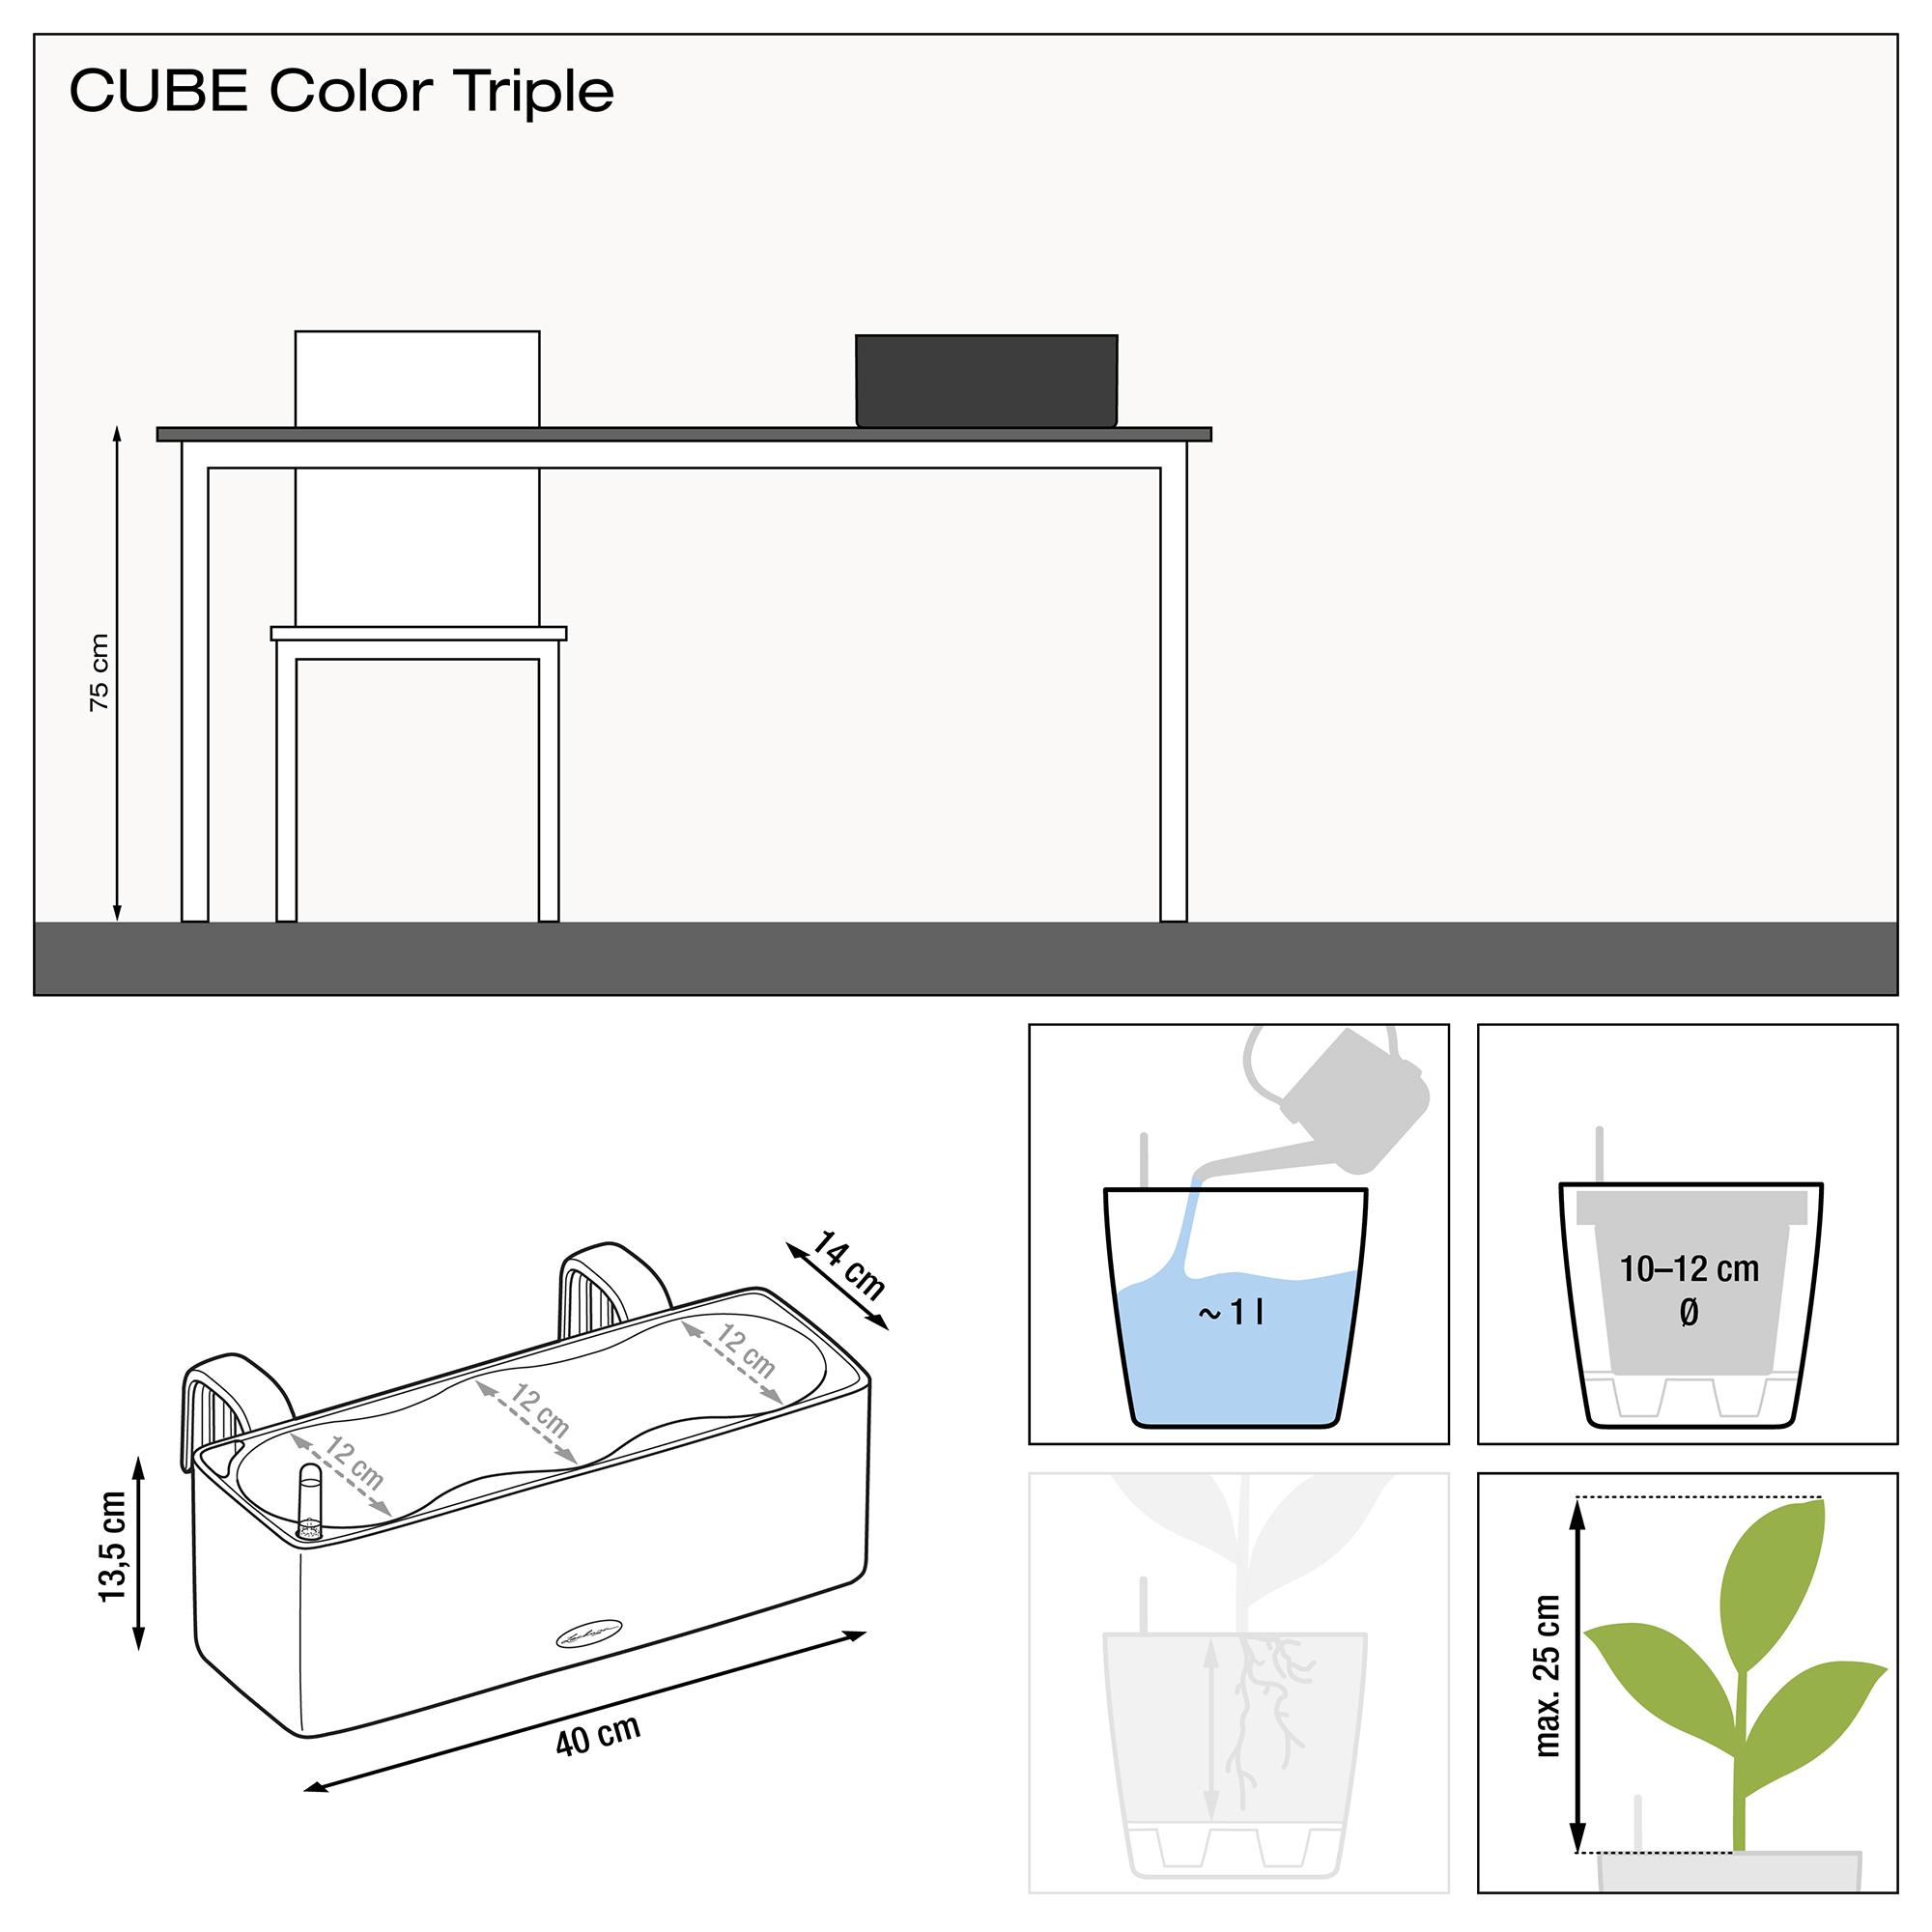 le_cube-color-triple_product_addi_nz Thumb